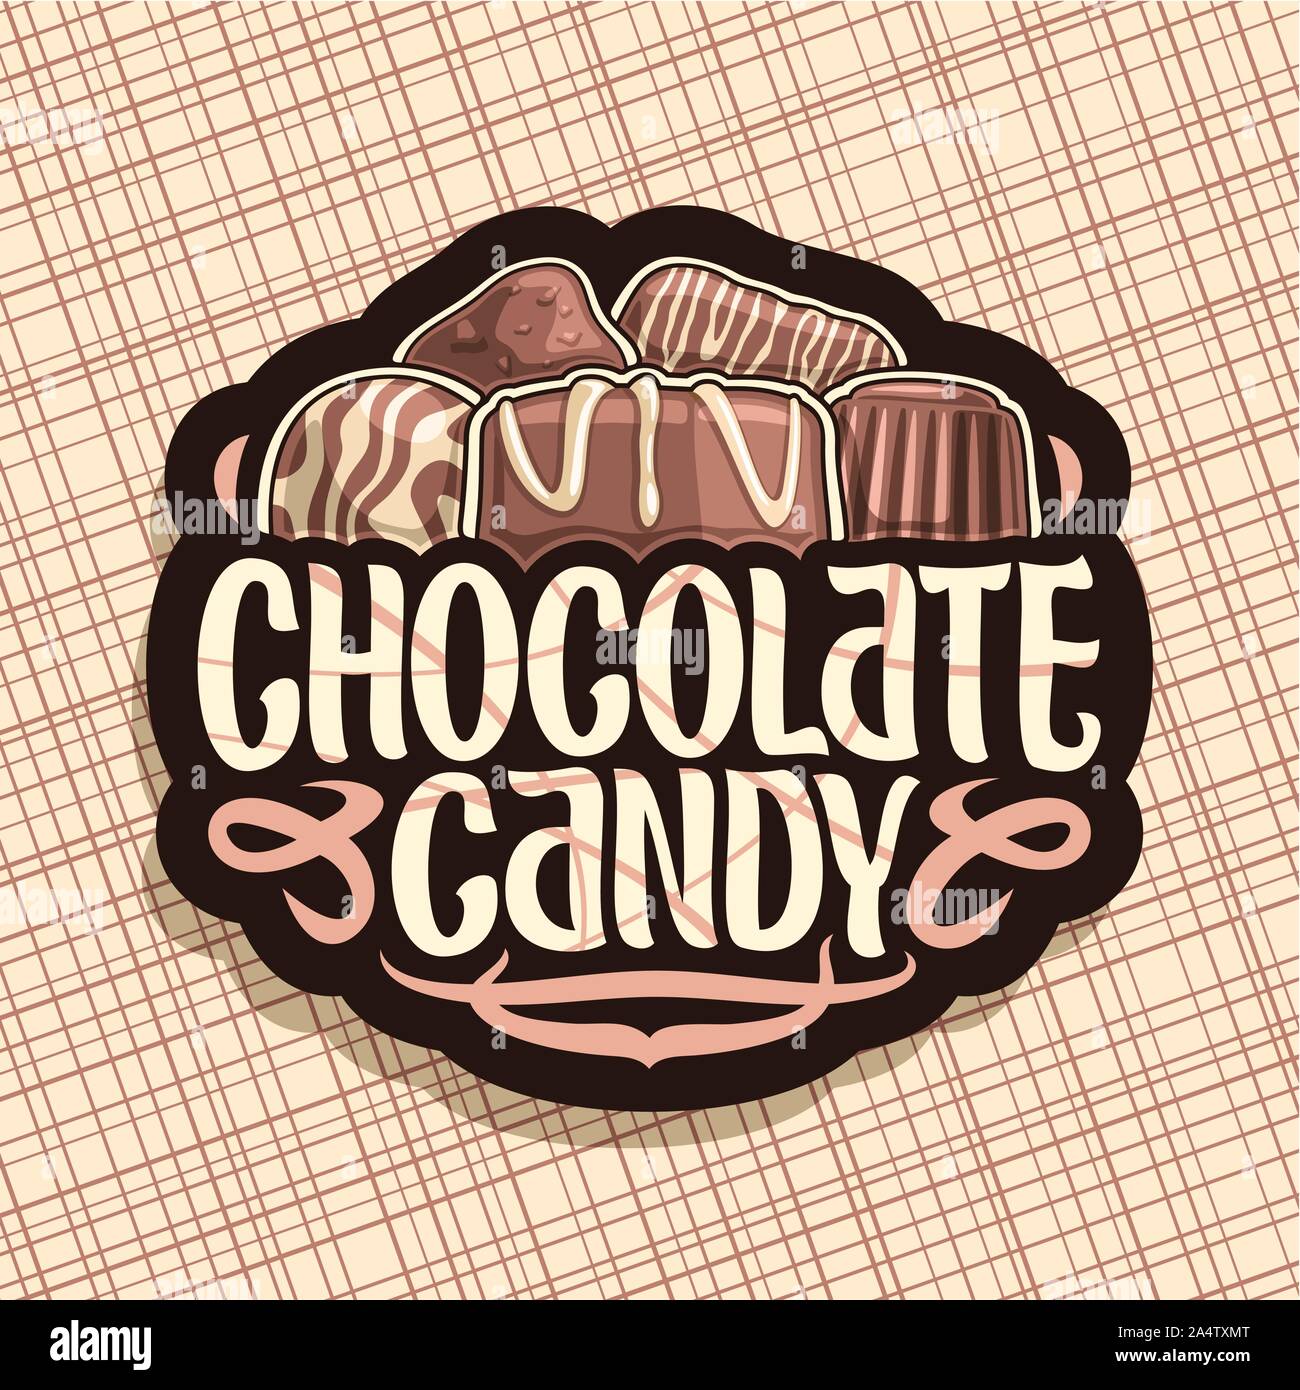 Logo Vector pour chocolat Bonbons, panneau noir avec pile de praline belge suisse, couverts de glaçage lait bonbons sucrés, truffe noire et barre de chocolat, o Illustration de Vecteur